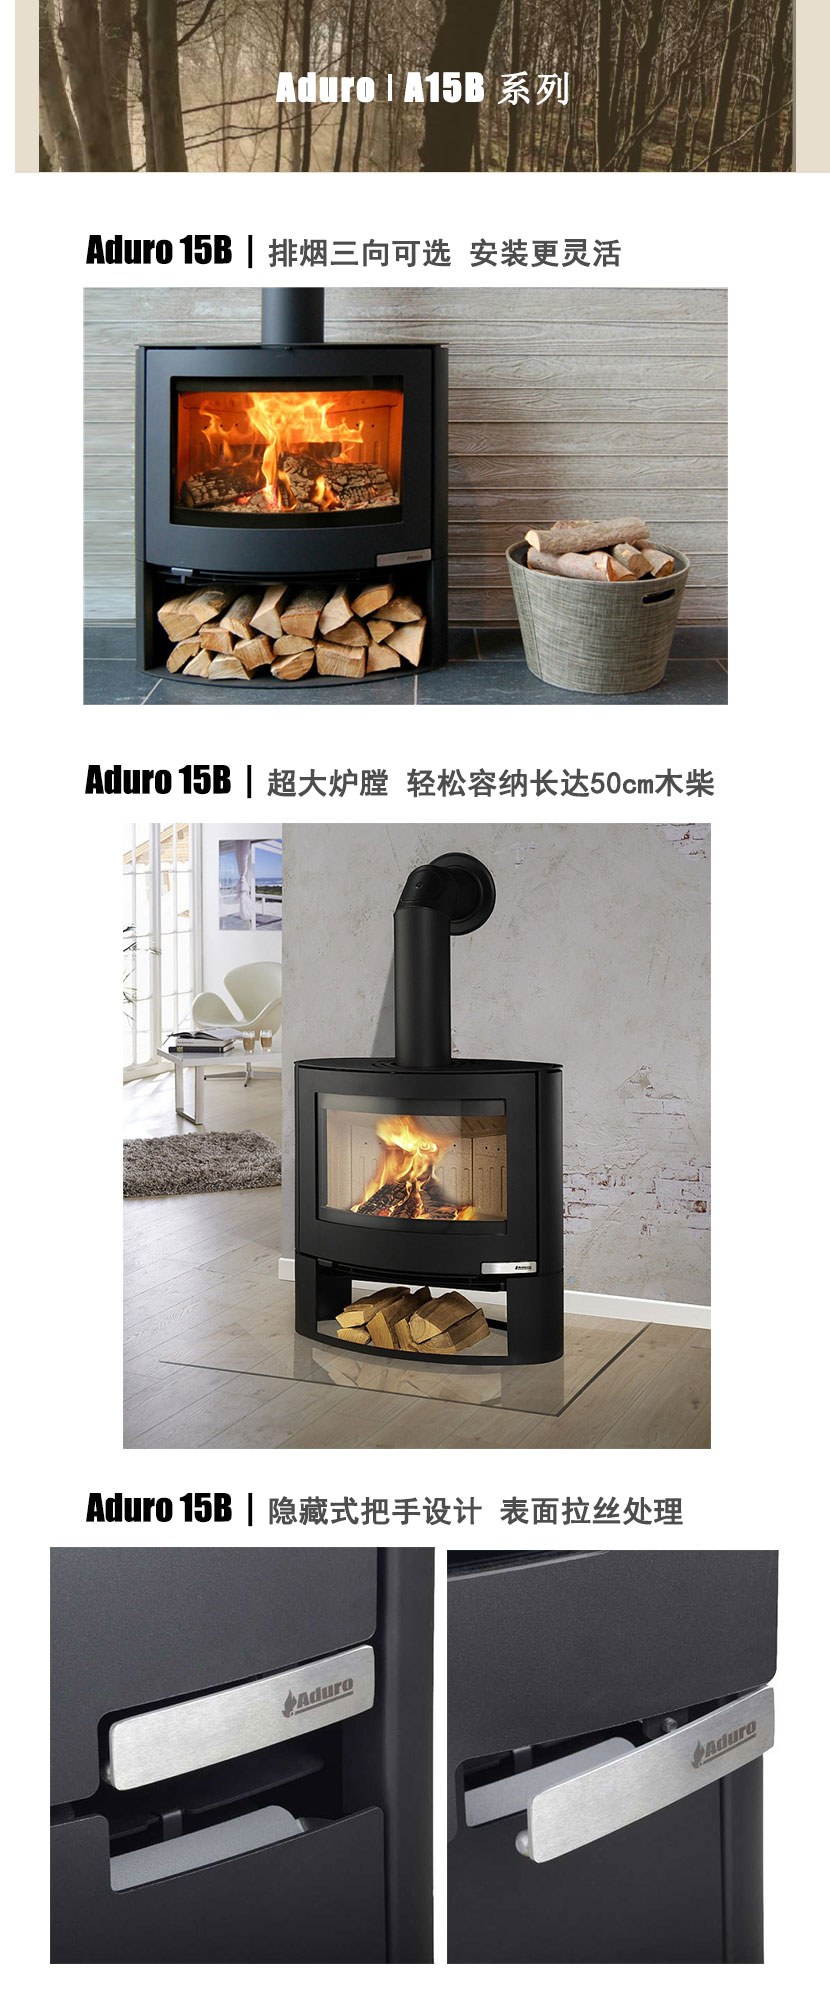 丹麦Aduro A15B独立式火炉/壁炉.jpg